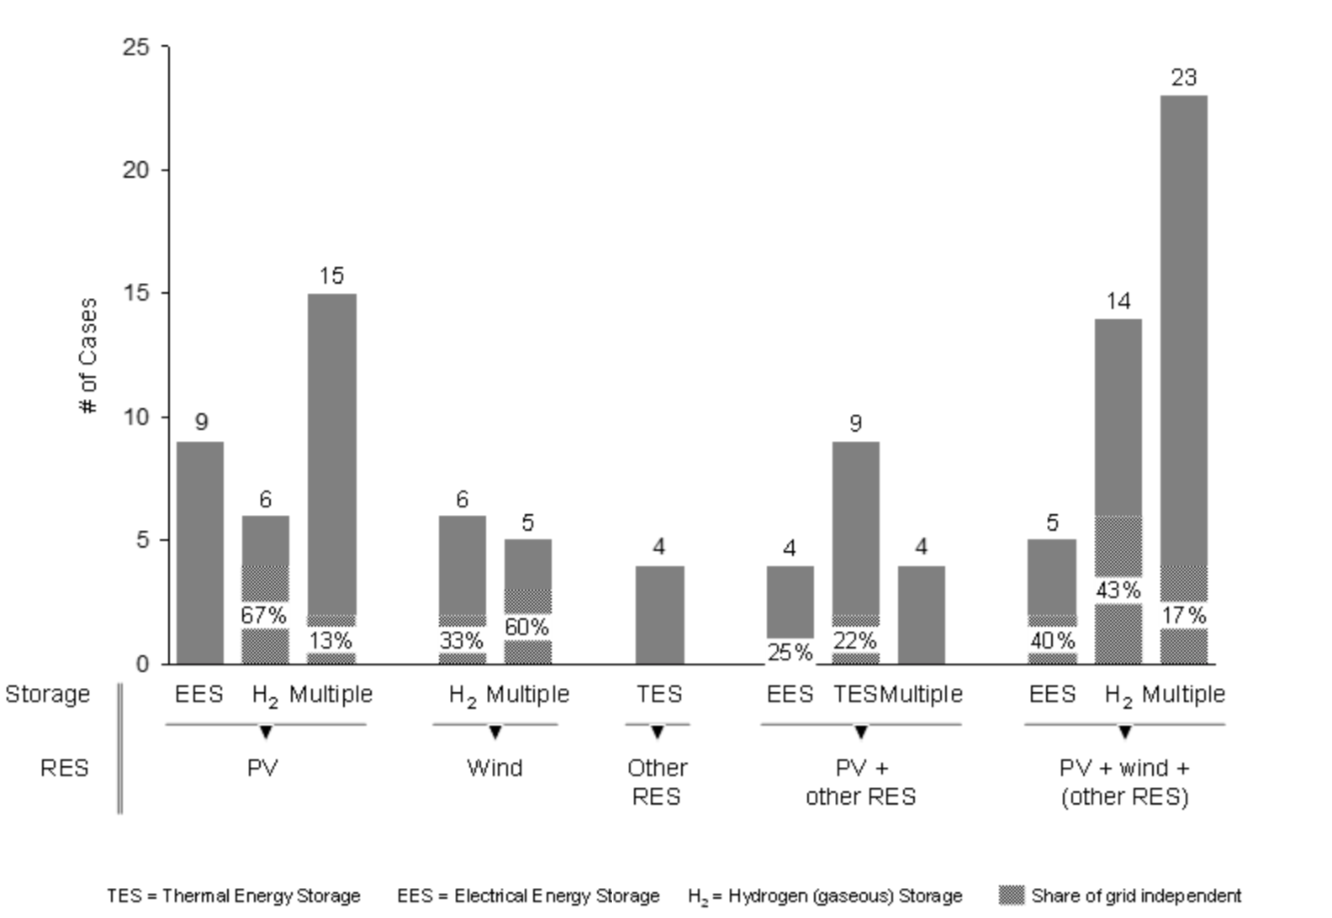 Systèmes multi-énergie classés en fonction des technologies utilisées. Les sources d’énergie sont détaillées dans la ligne du bas : photovoltaïque (PV), éolien, installations plus rares comme la géothermie ou l’héliothermie (Other RES) et combinaisons de ces derniers. La ligne du haut indique le type de stockage : batterie (EES), réservoir d’hydrogène (H<sub>2</sub>), accumulateur de chaleur (TES) ou combinaisons de plusieurs technologies.